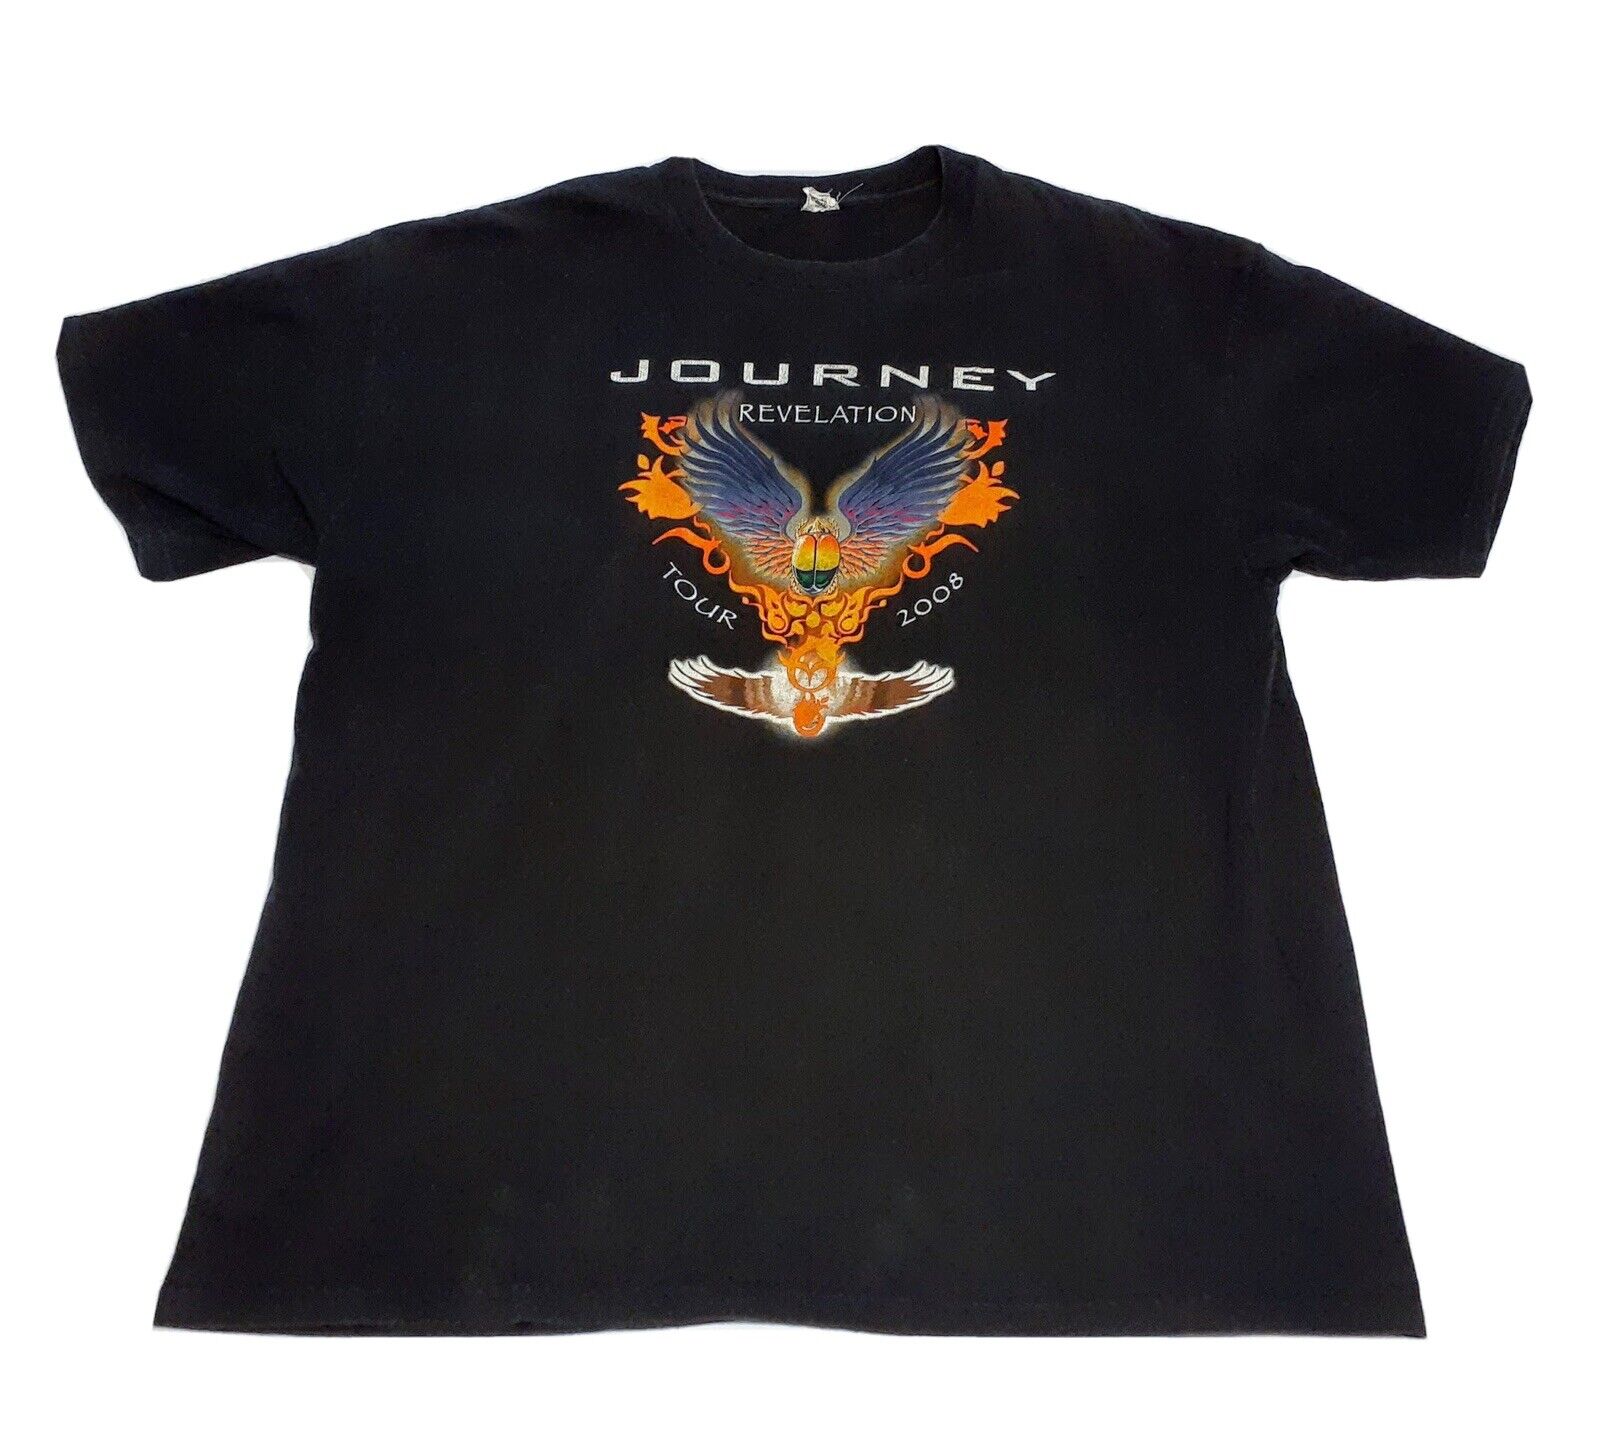 JOURNEY REVELATION TOUR 2008 USA CONCERT ROCK HEAVY METAL XL BLACK T-SHIRT